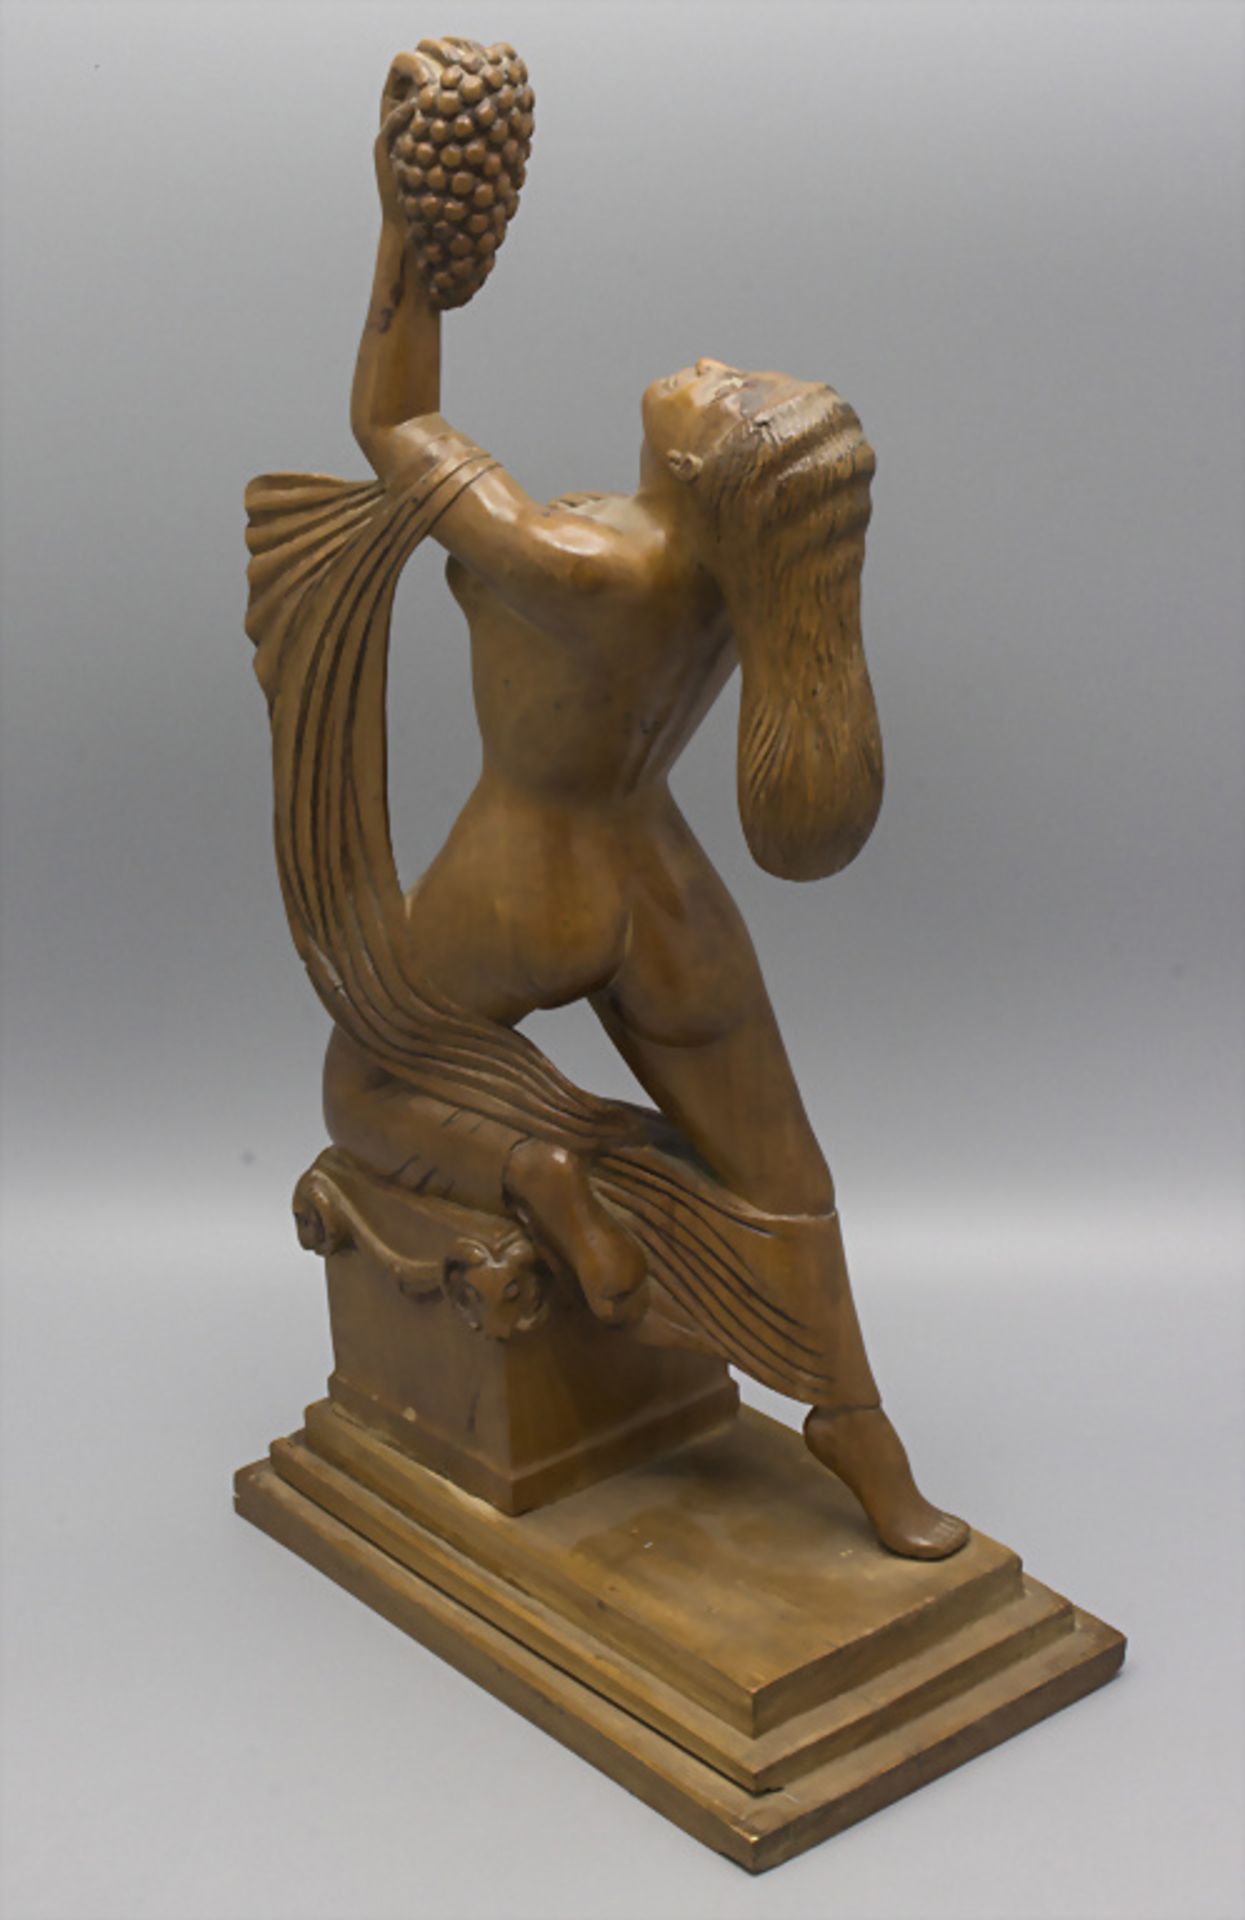 Holzskulptur 'weiblicher Akt mit Trauben' / A wooden scultpture of a female nude with grapes, ... - Bild 3 aus 5